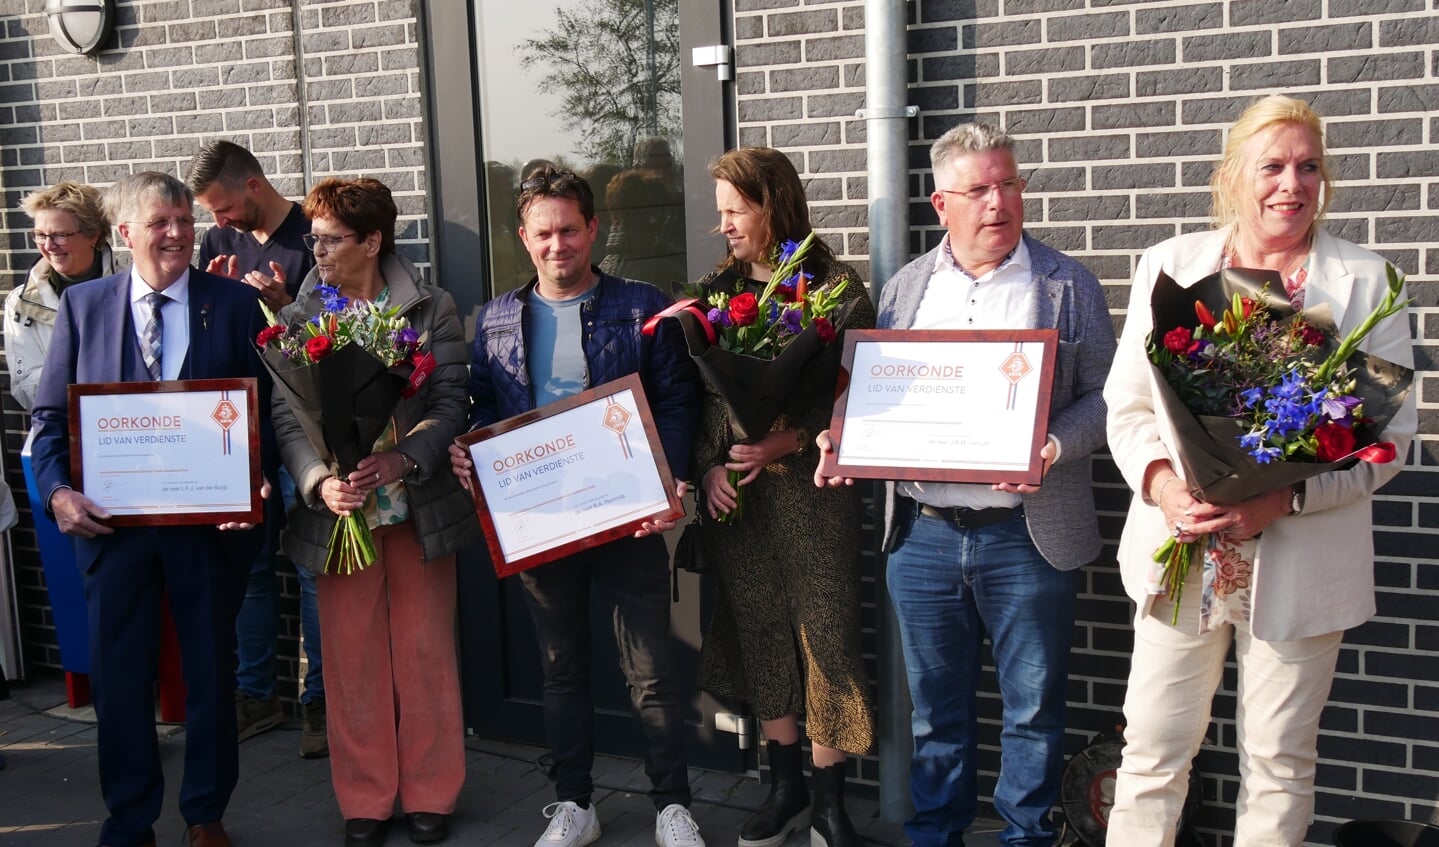 Bert van der Burgt, Berton Remmits en Ko van Lith werden benoemd tot Lid van Verdienste van de KNVB.